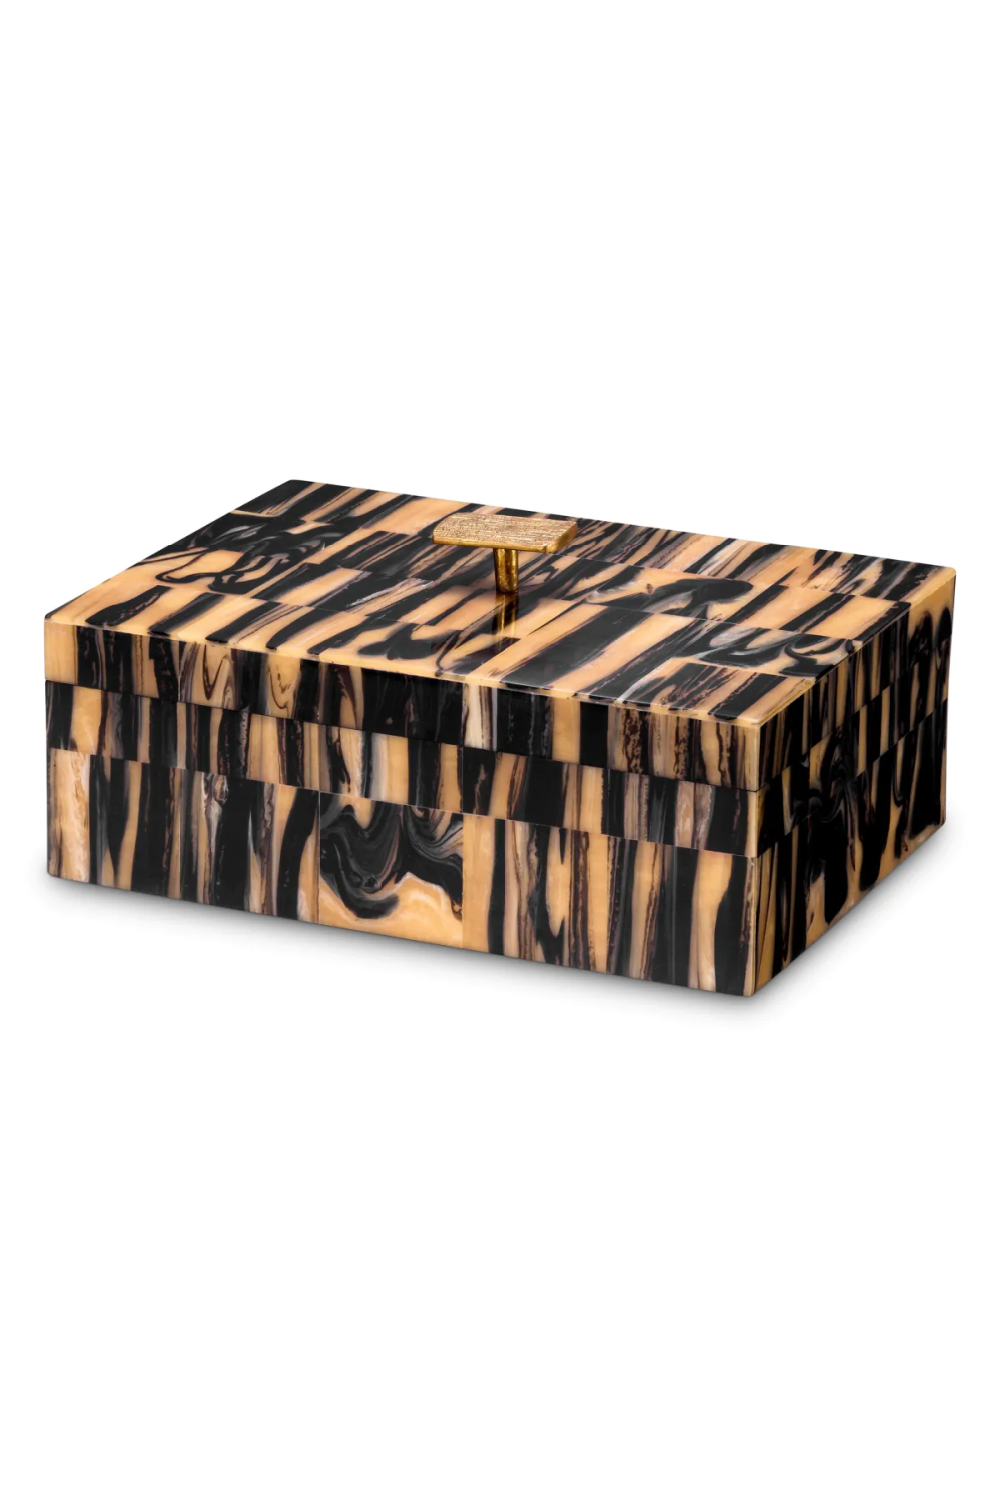 Multi-Colored Decorative Box | Eichholtz Capitola | Oroa.com